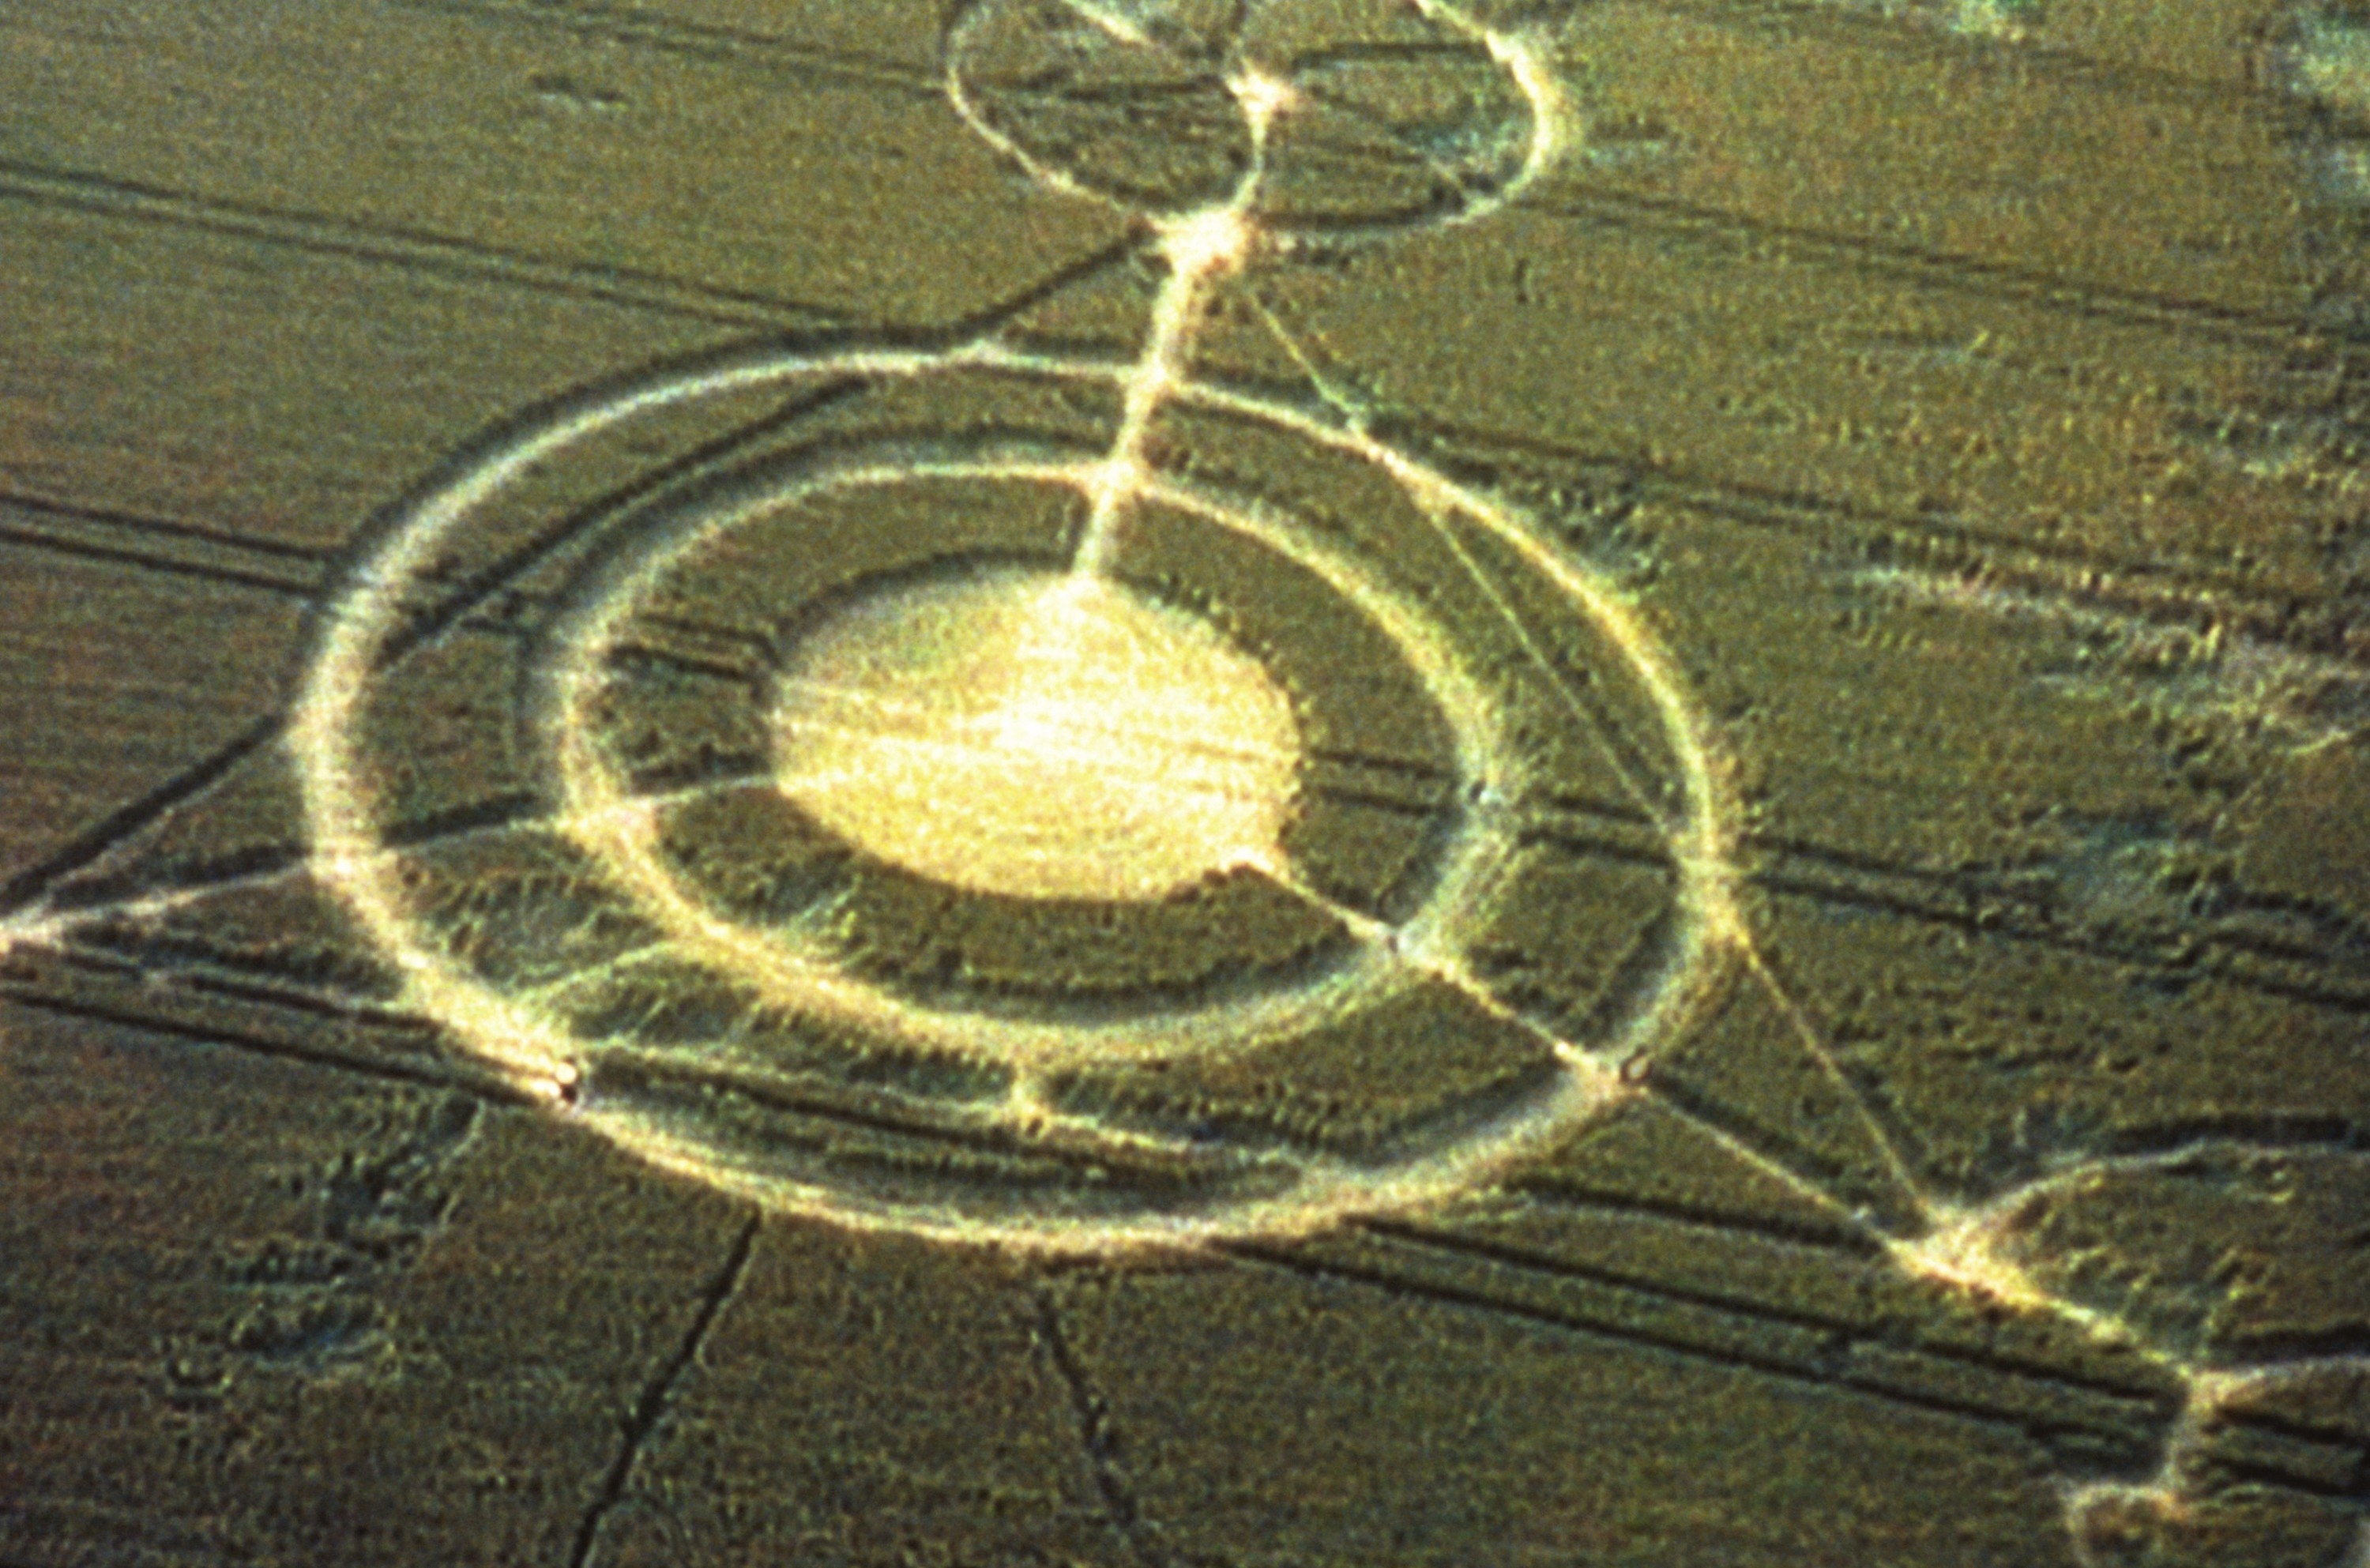 A crop circle